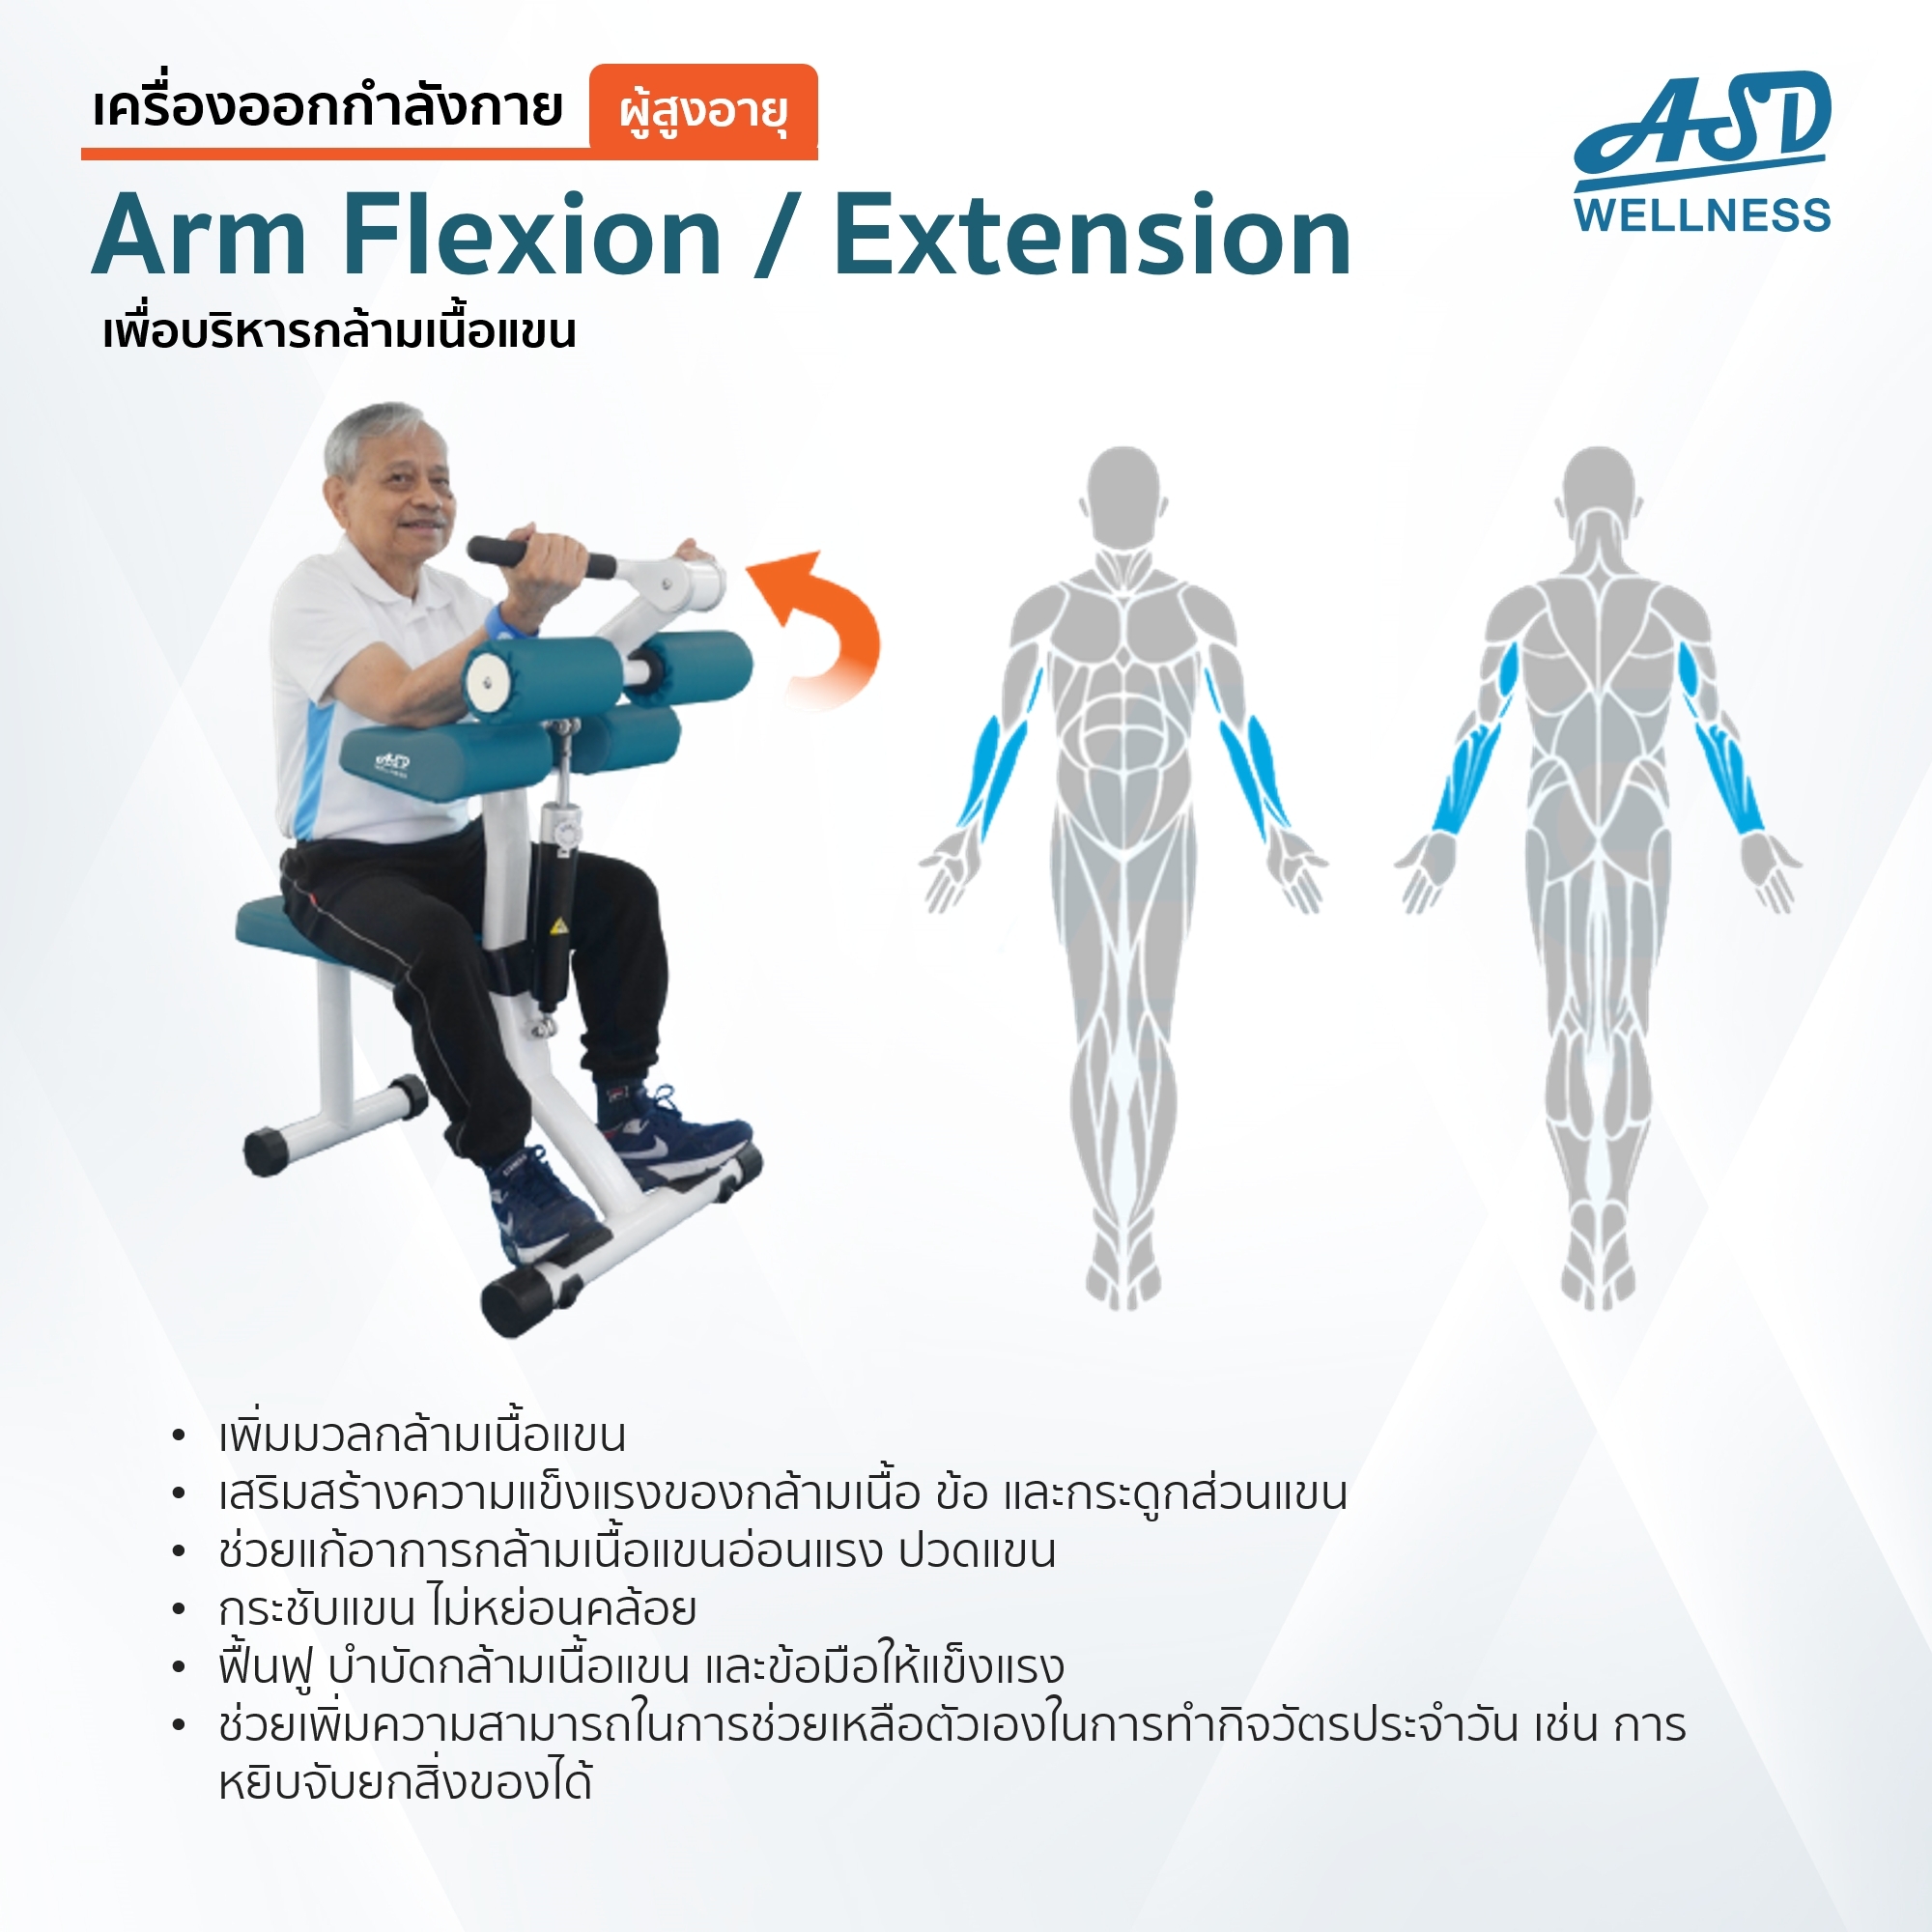 เครื่องออกกำลังกาย สำหรับผู้สูงอายุ เพื่อบริหารกล้ามเนื้อแขน Arm Flexion / Extension